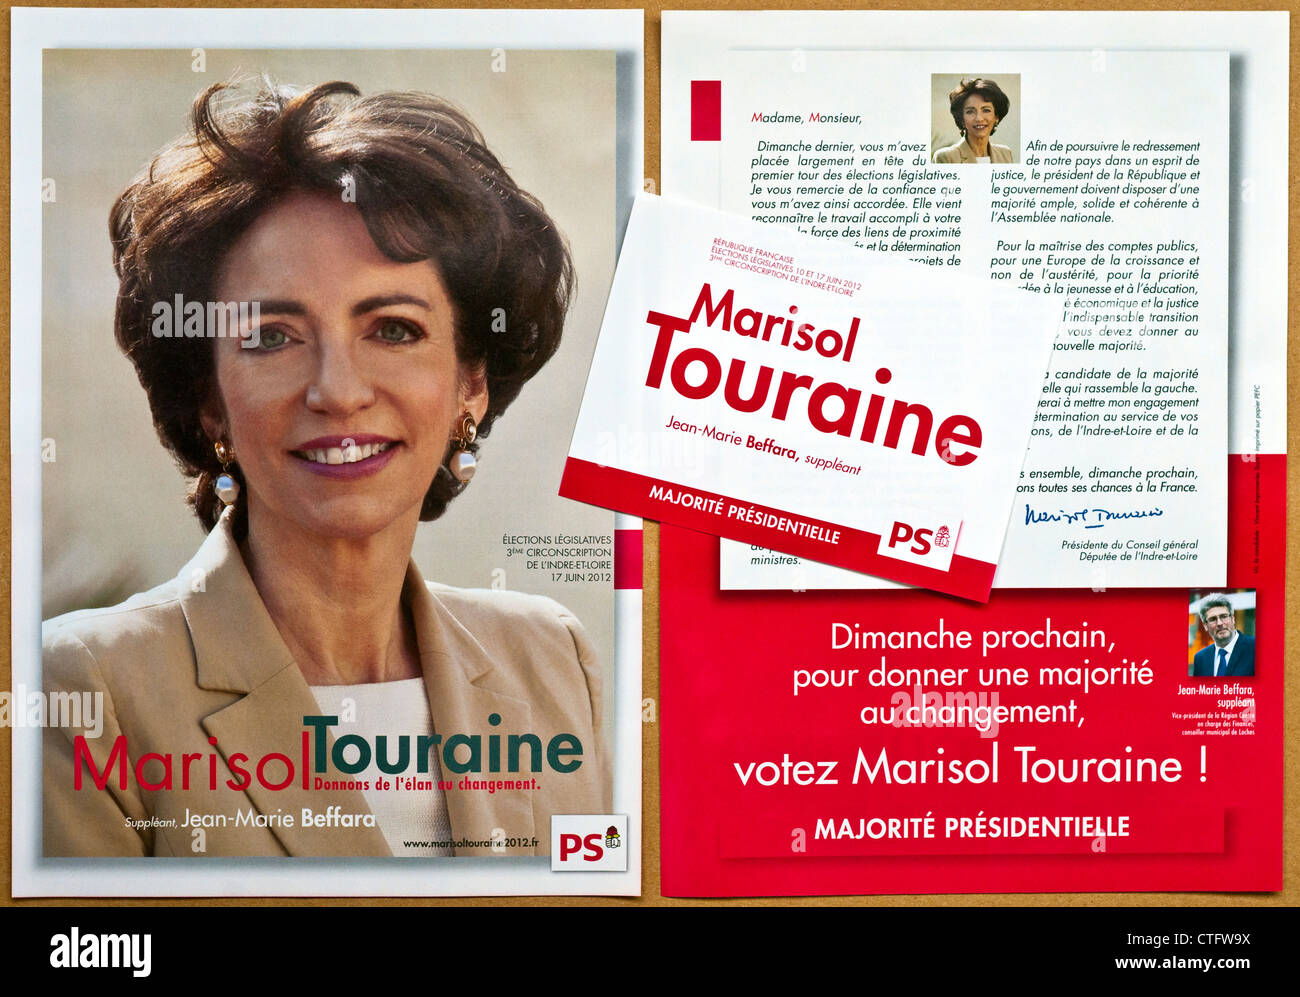 Französische nationale Wahlplakate und Flyer für Marisol Touraine (UMP - Center Rechtsextremismus) - Indre-et-Loire, Frankreich. Stockfoto